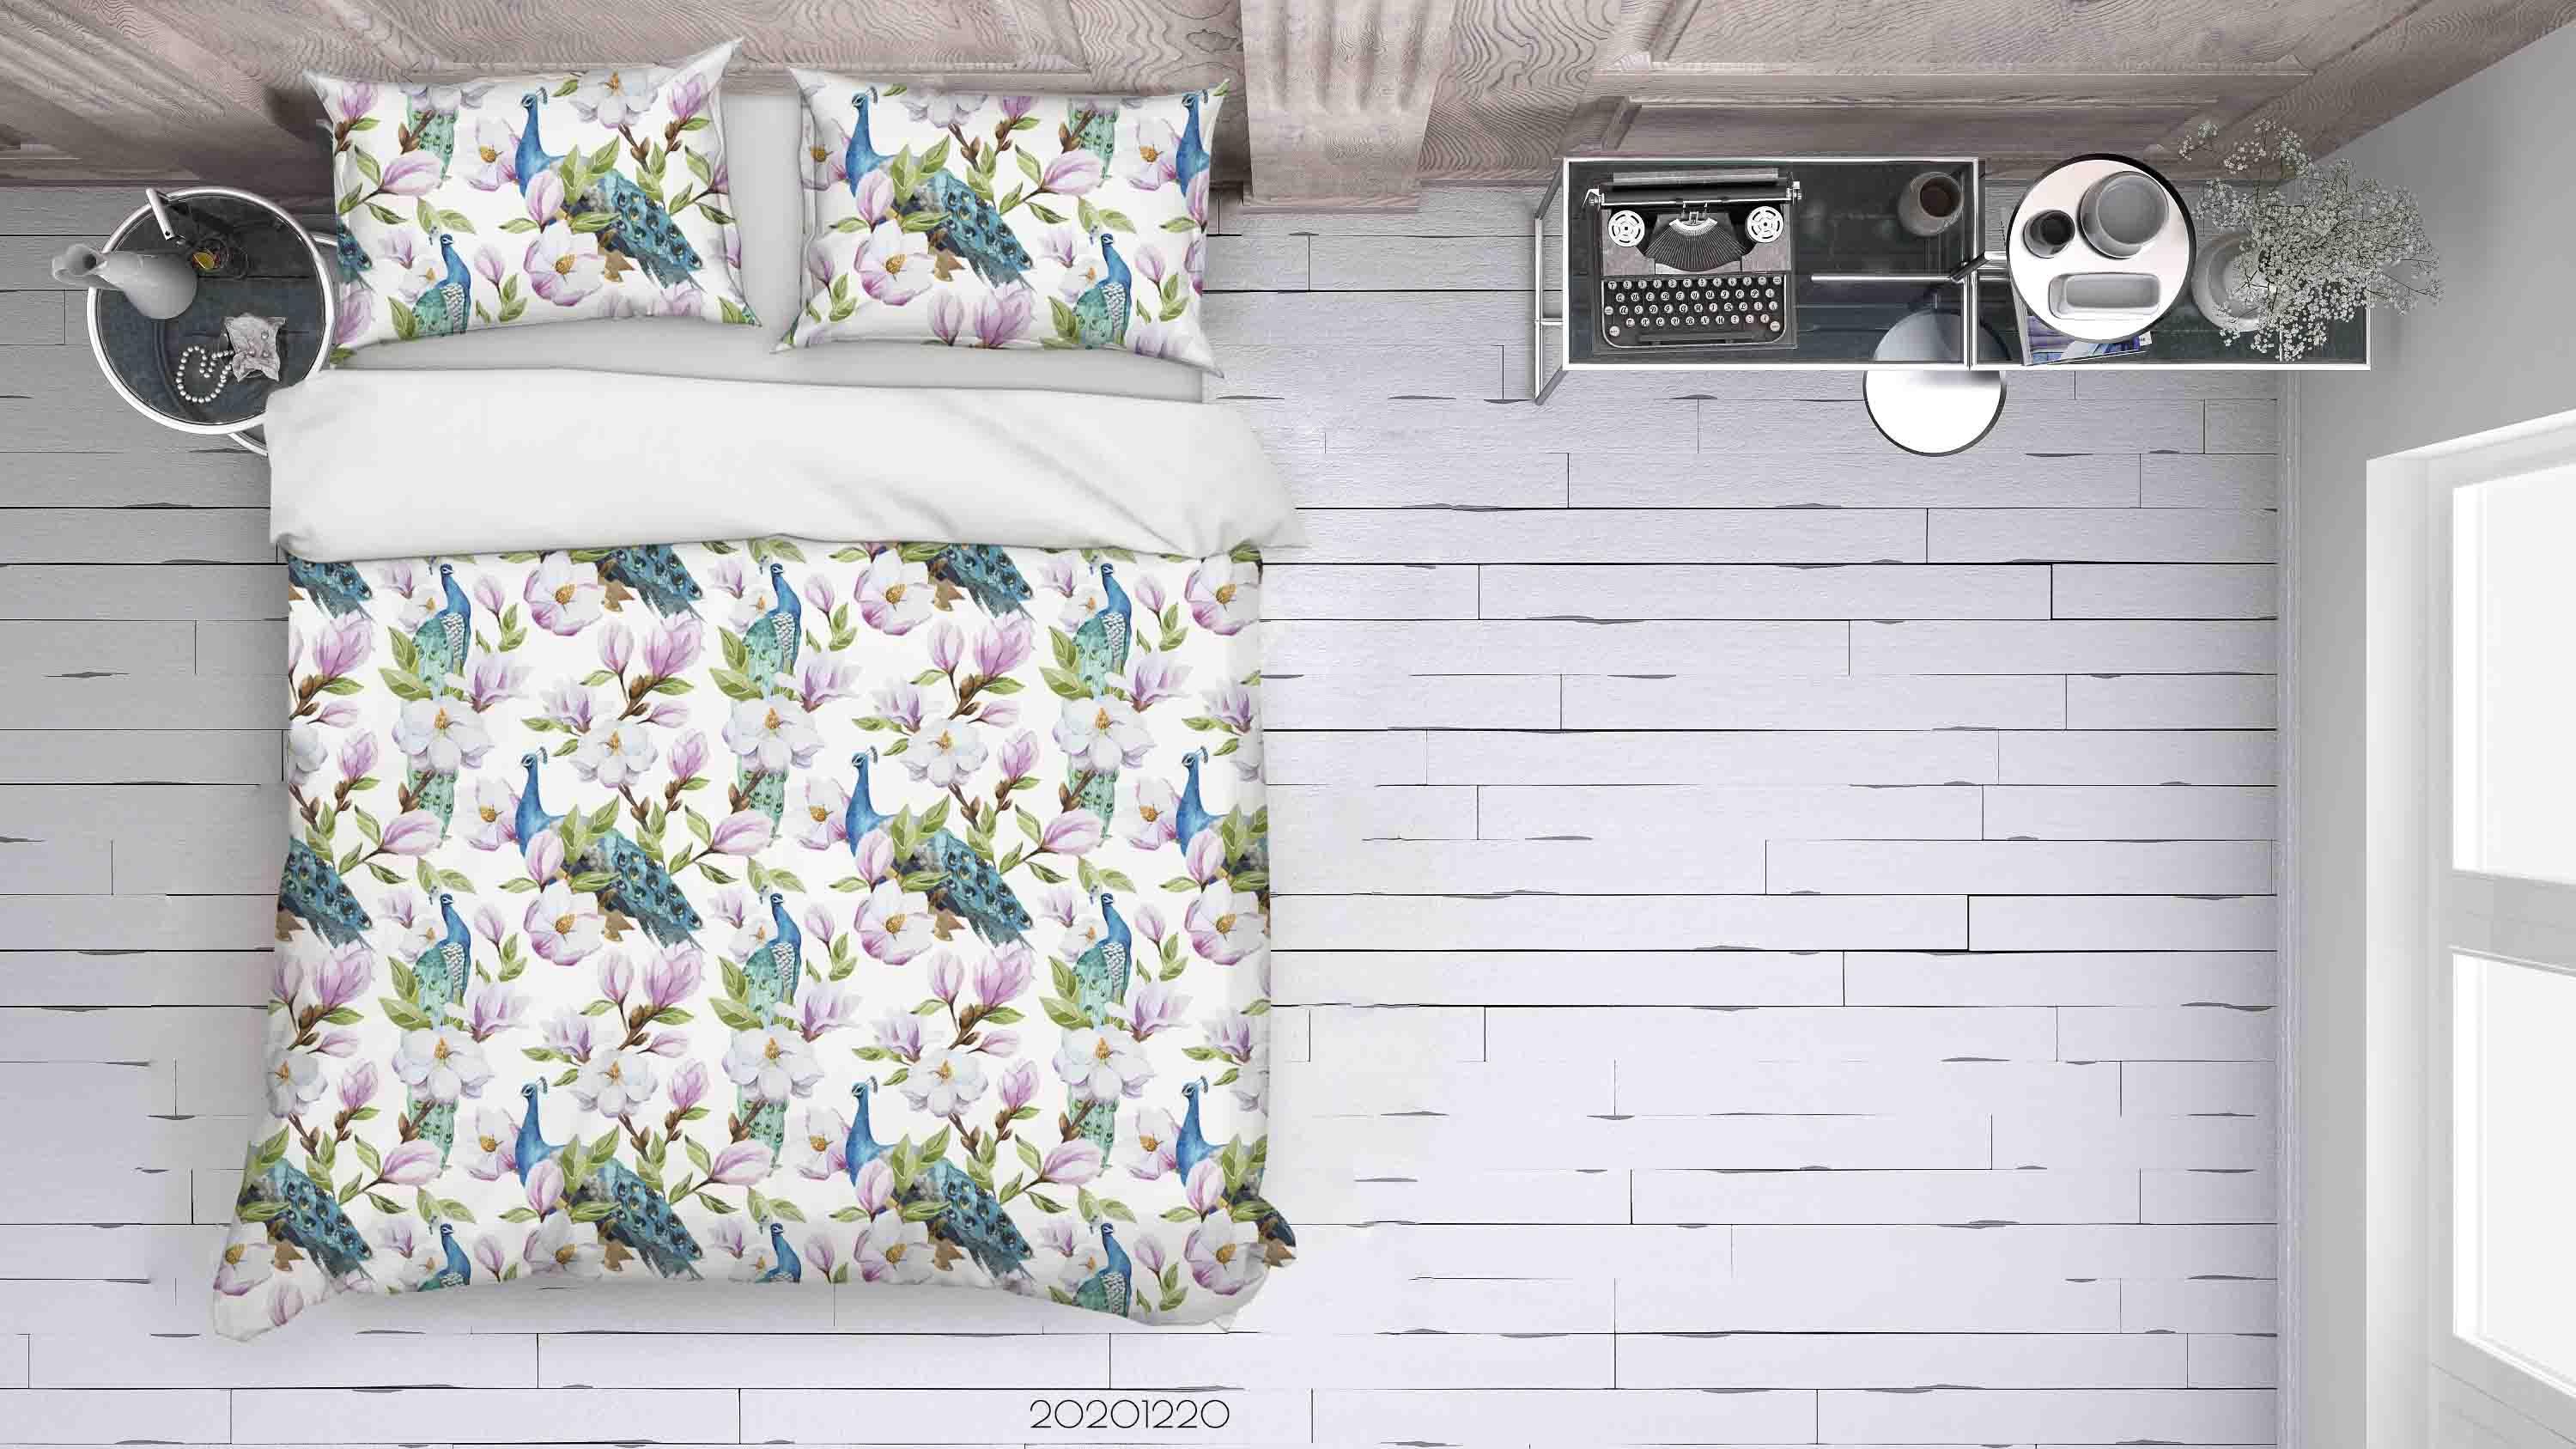 3D Watercolor Animal Peacock Floral Quilt Cover Set Bedding Set Duvet Cover Pillowcases 65- Jess Art Decoration